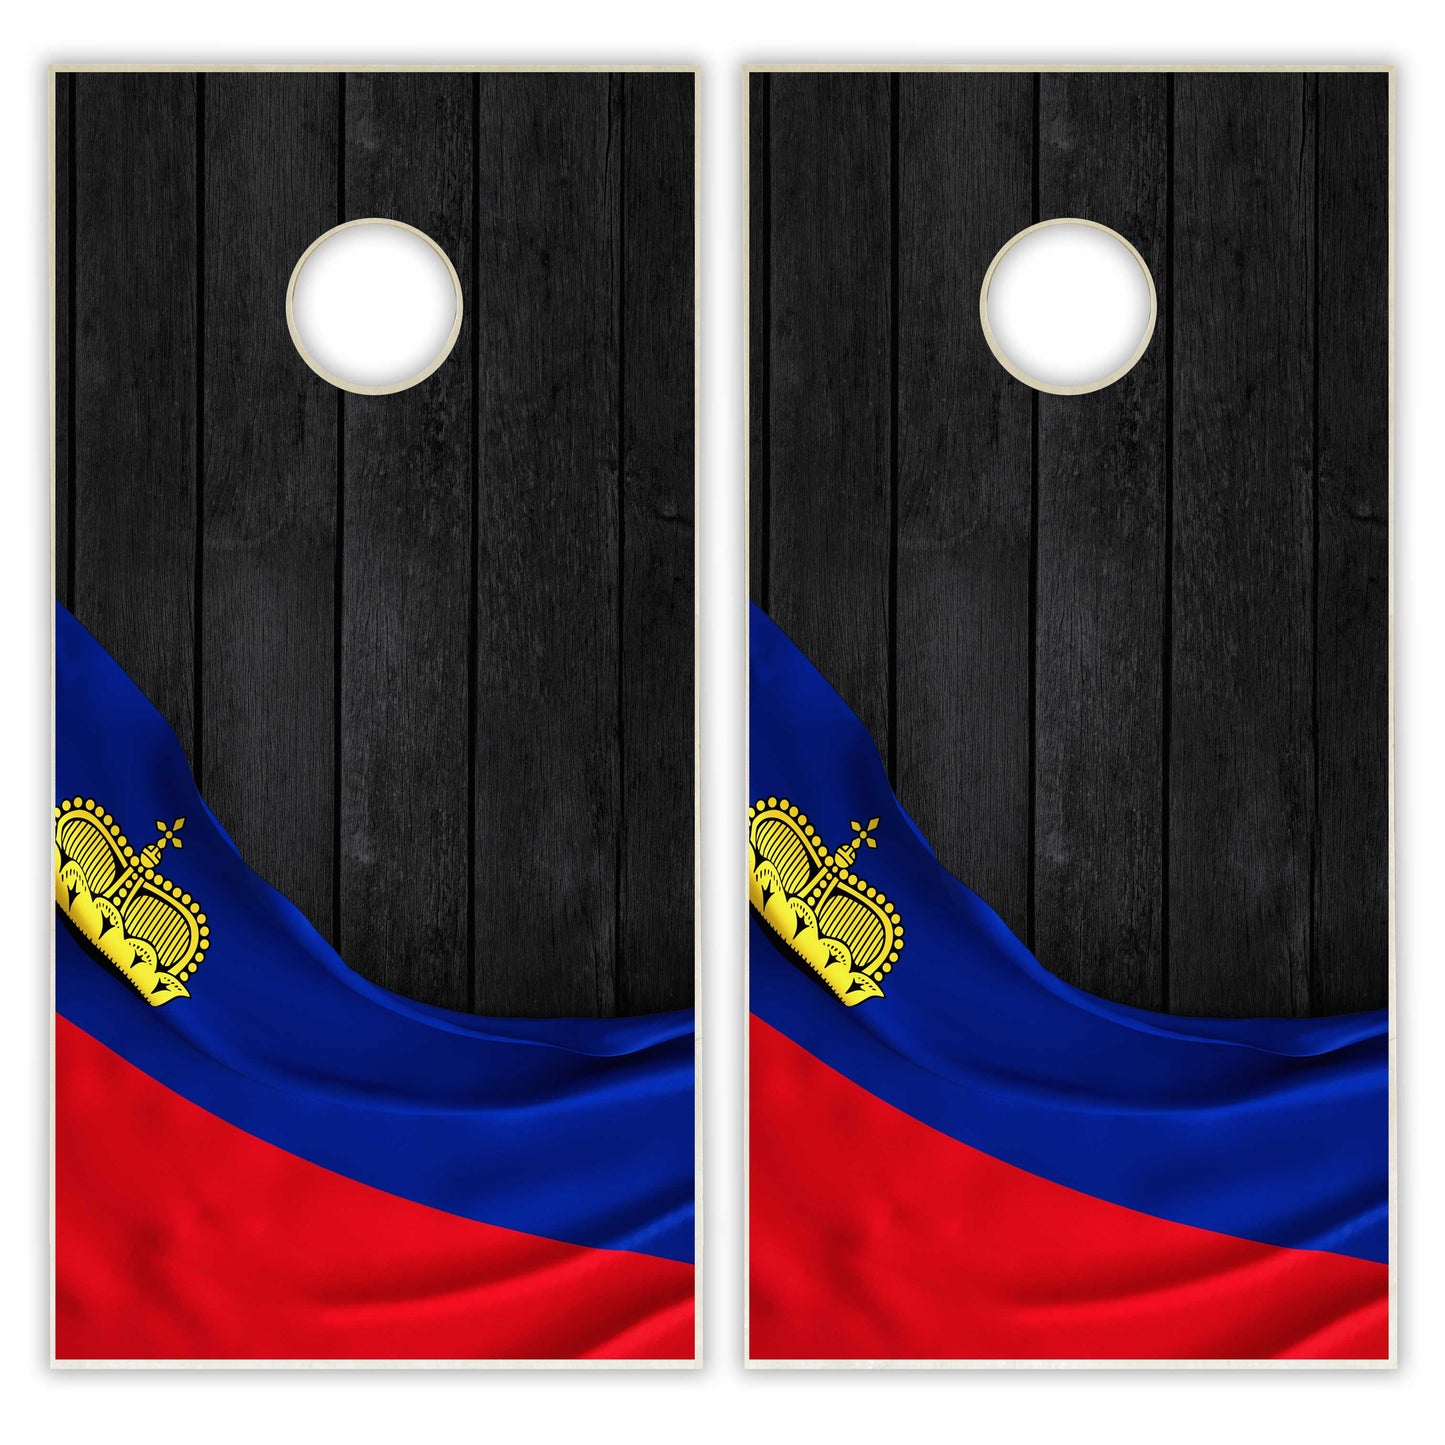 Liechtensteinn Flag Cornhole Set - Black Wood